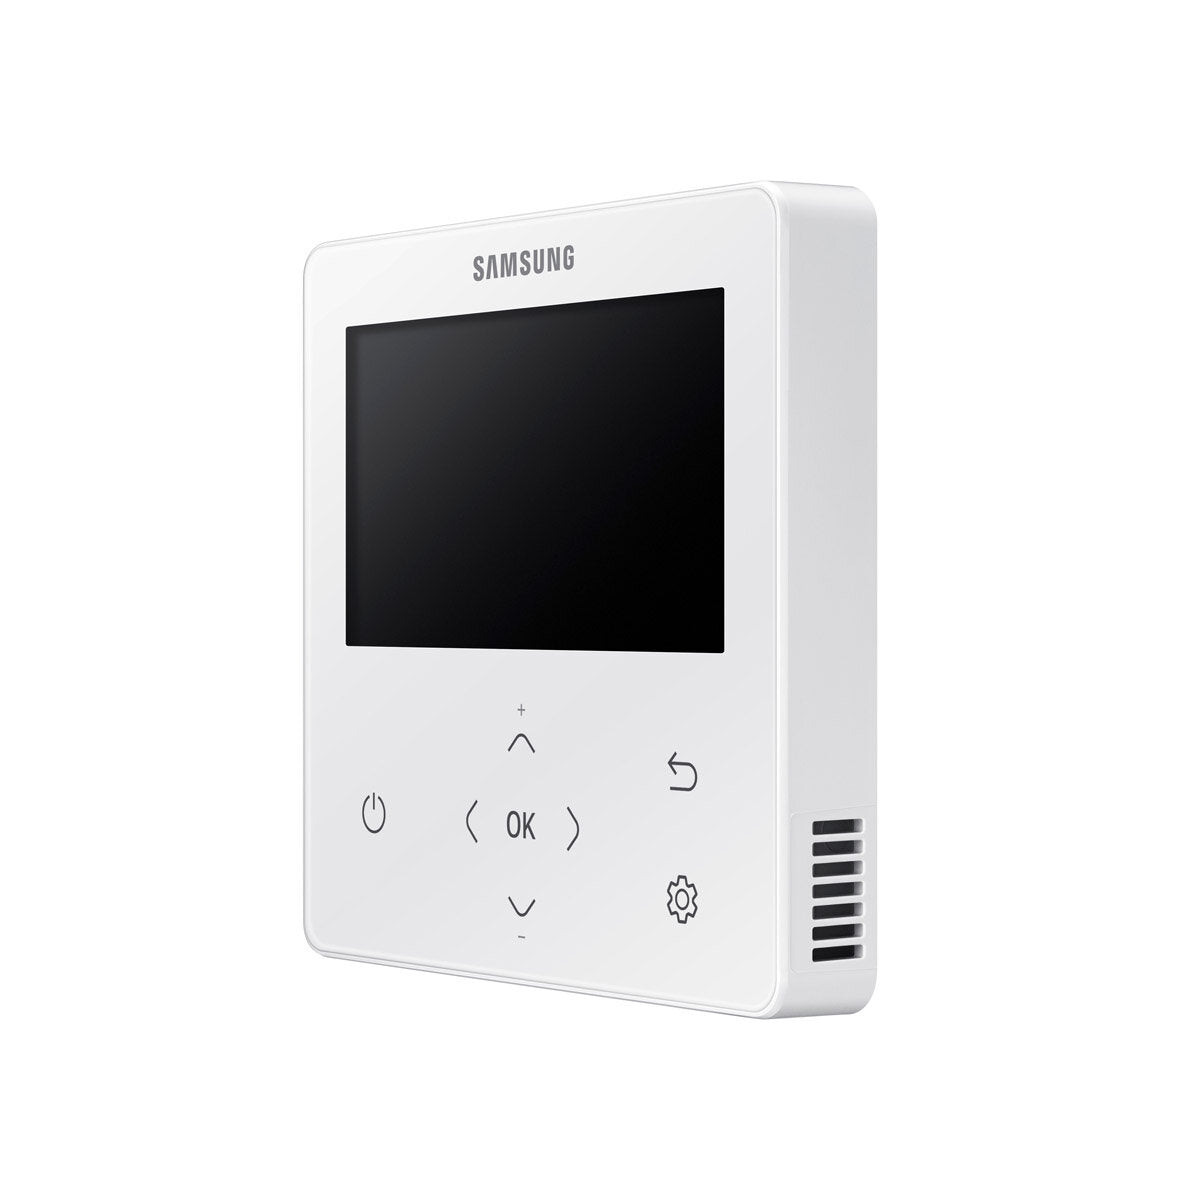 Samsung Air conditioner Windfree 4-way trial split 18000 + 18000 + 18000 BTU inverter A ++ outdoor unit 10.0 kW